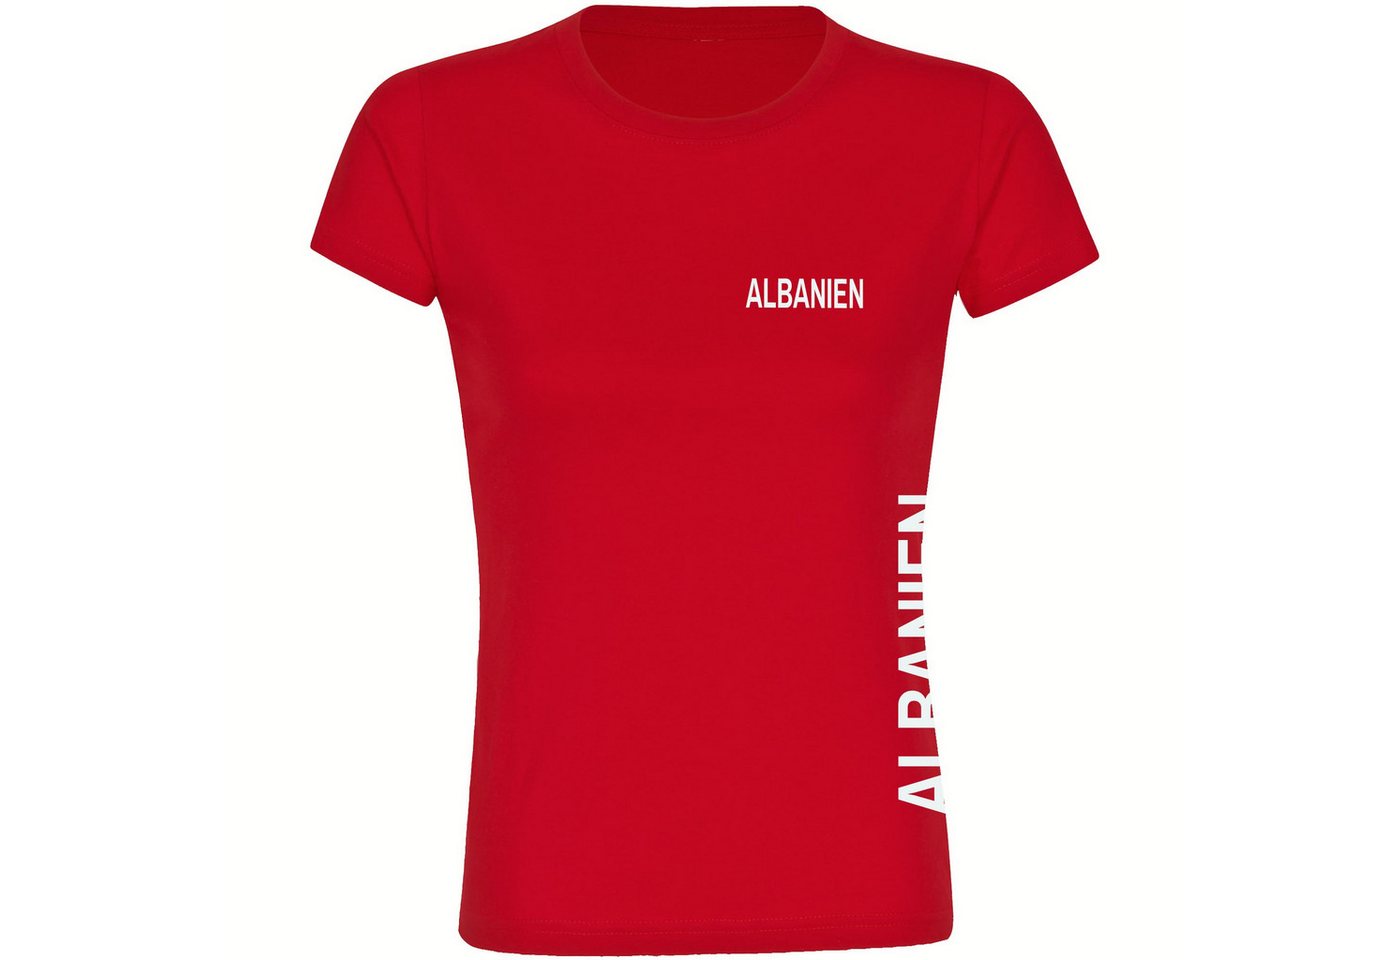 multifanshop T-Shirt Damen Albanien - Brust & Seite - Frauen von multifanshop